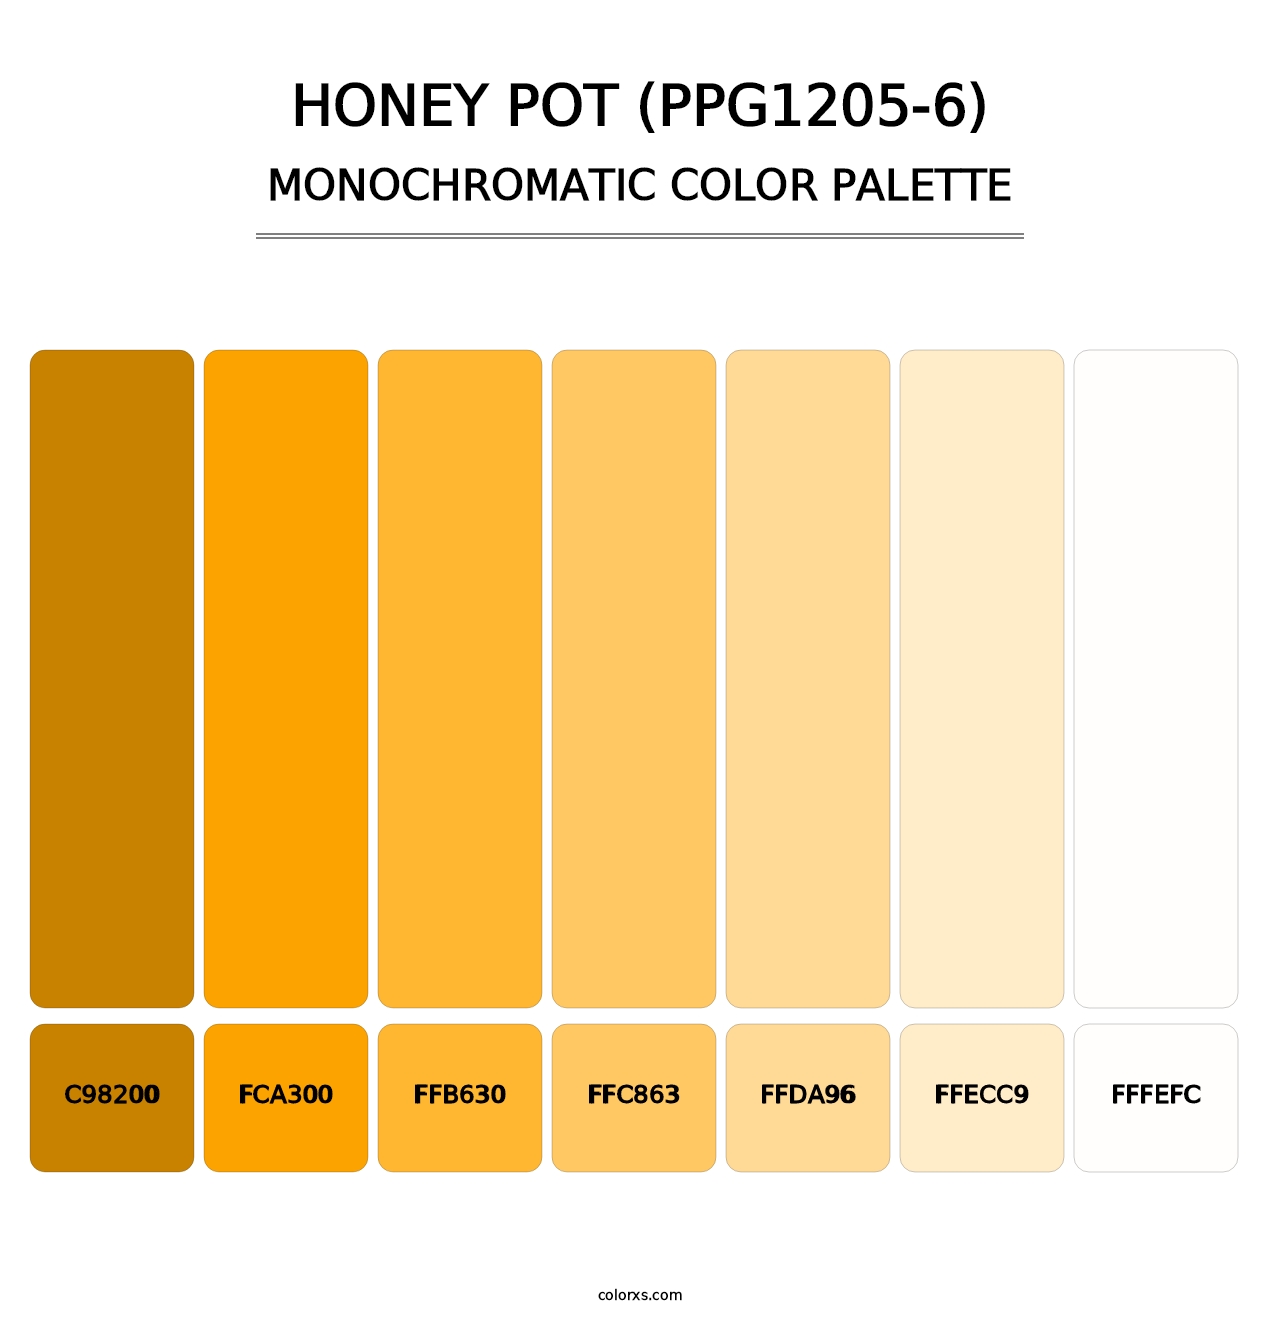 Honey Pot (PPG1205-6) - Monochromatic Color Palette